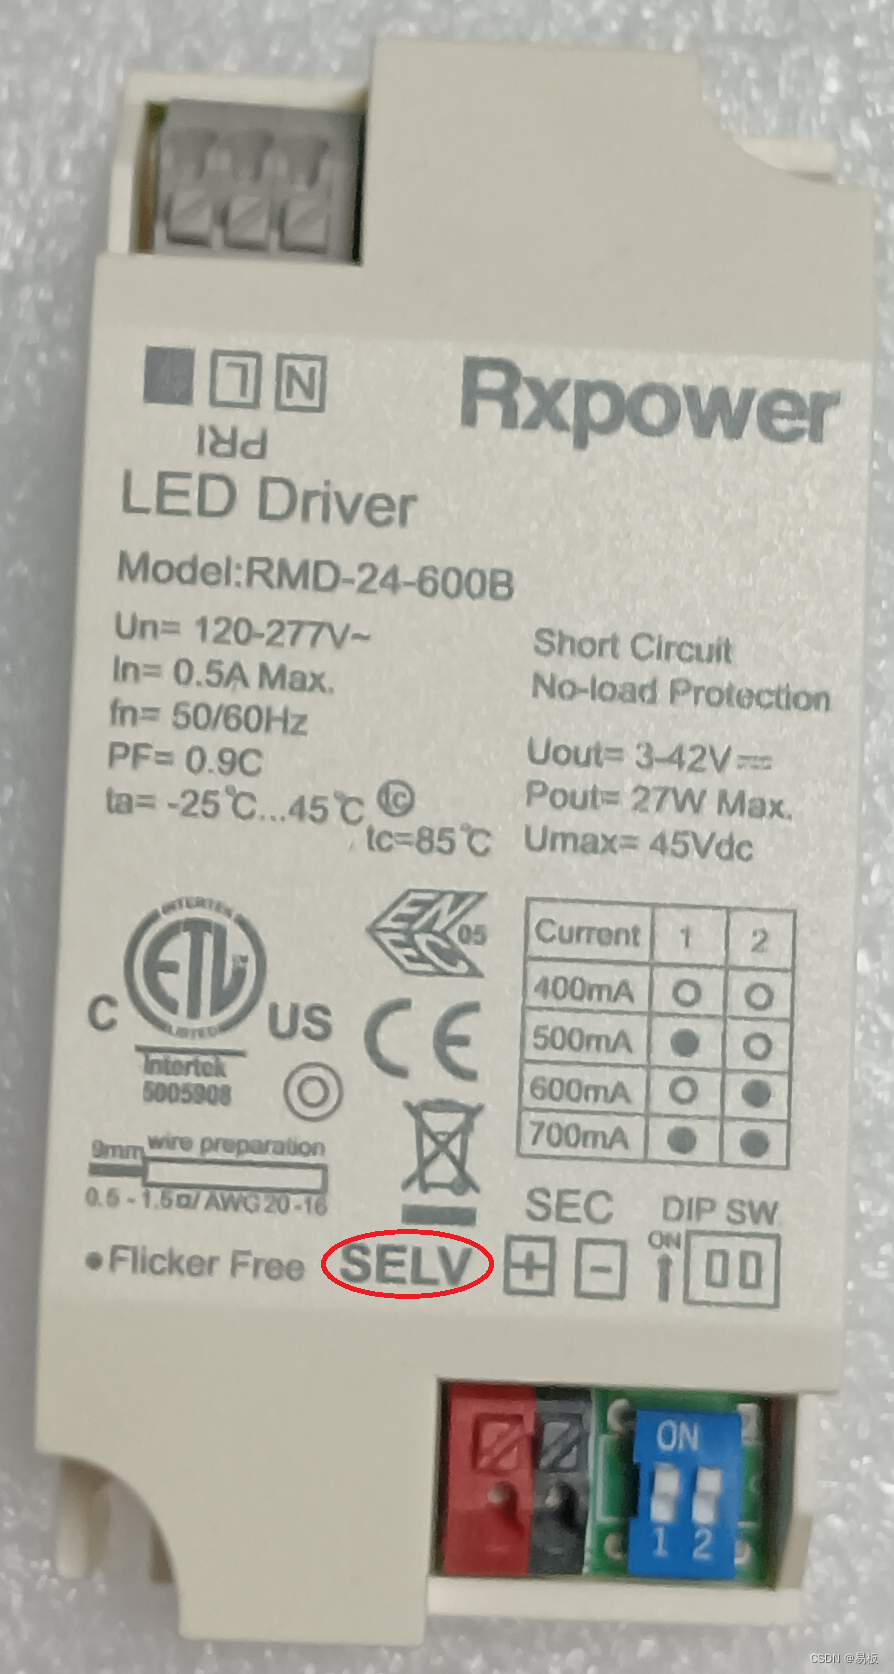 安全特低电压 SELV(Safety Extra Low Voltage，缩写SELV) 是不接地系统的安全特低电压